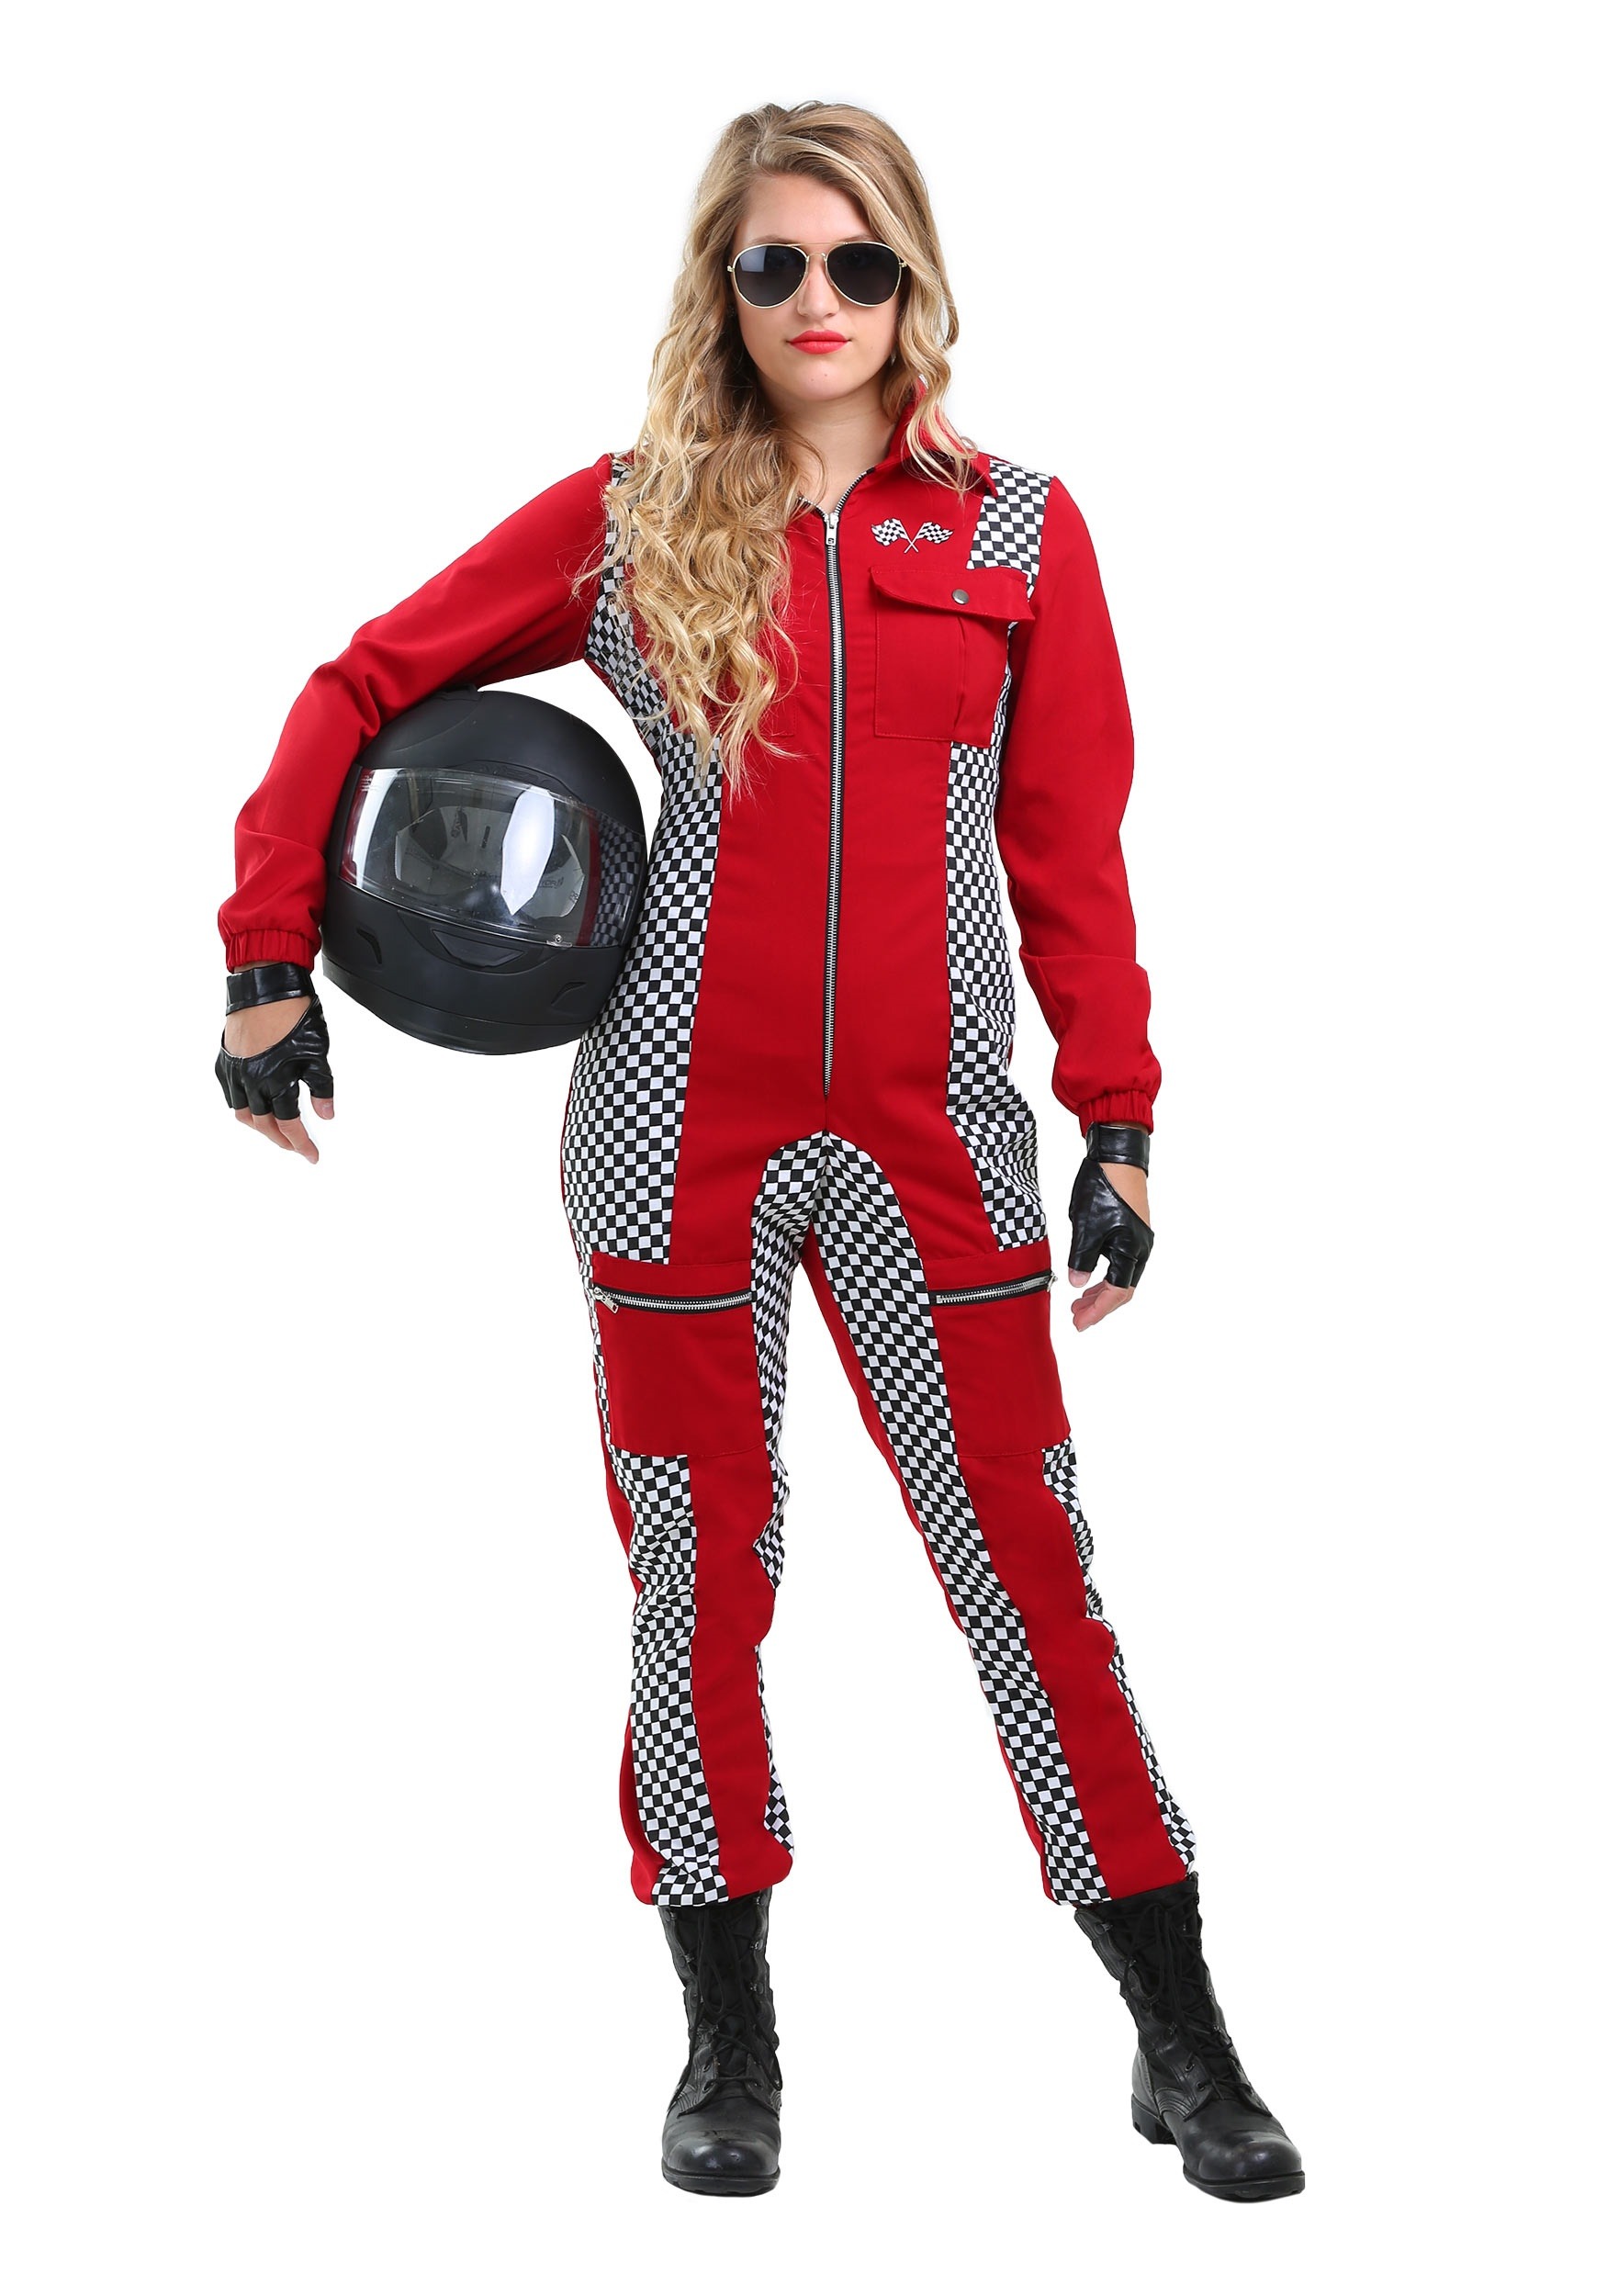 Racer Jumpsuit Plus Size Women’s Costume